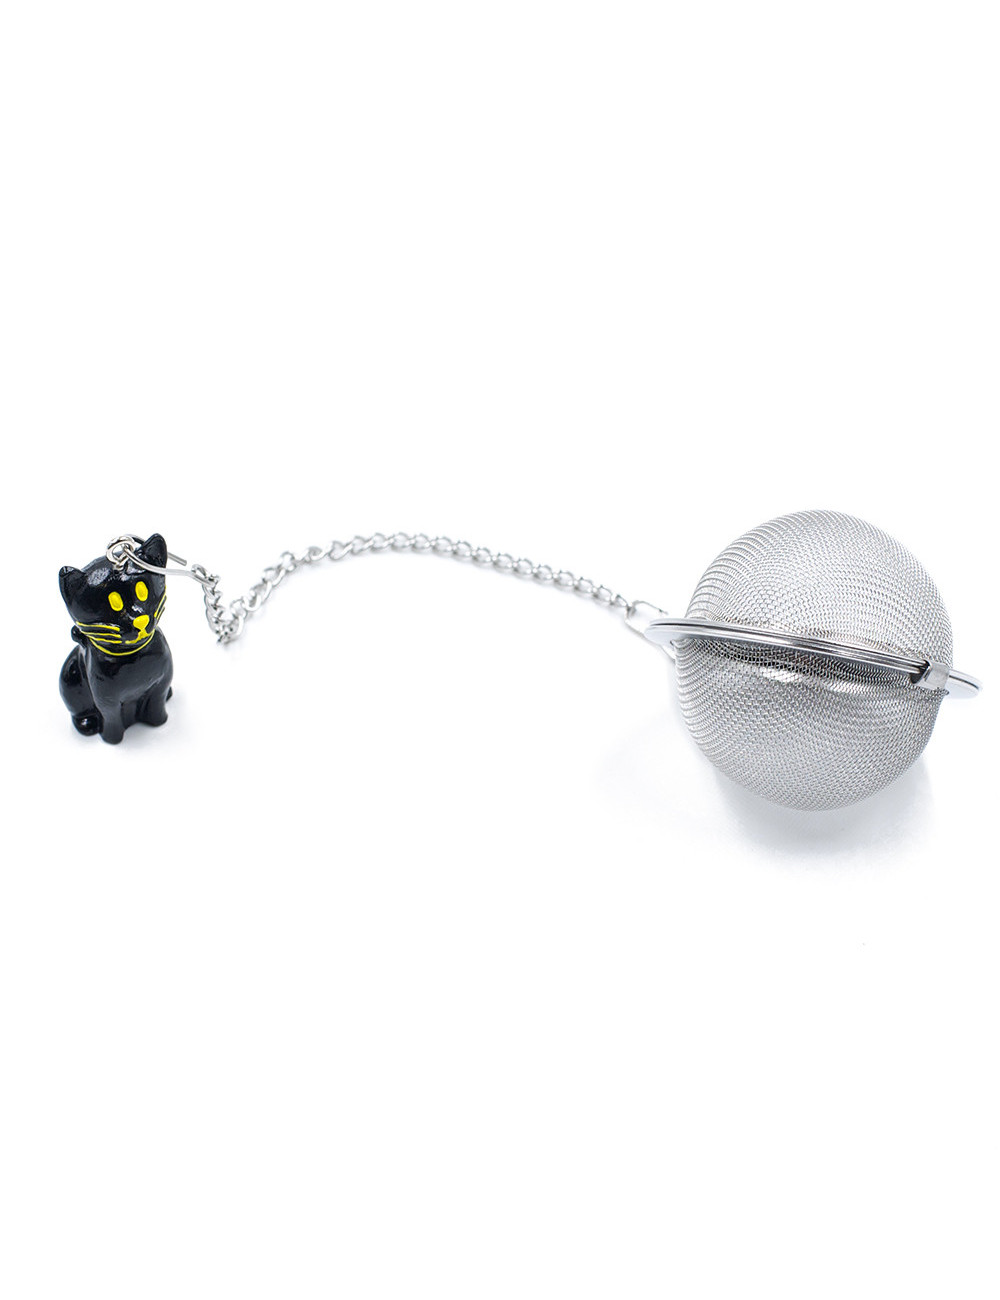 Filtro sfera Ø 5 cm in acciaio inox con ciondolo colorato - La Pianta del Tè shop online